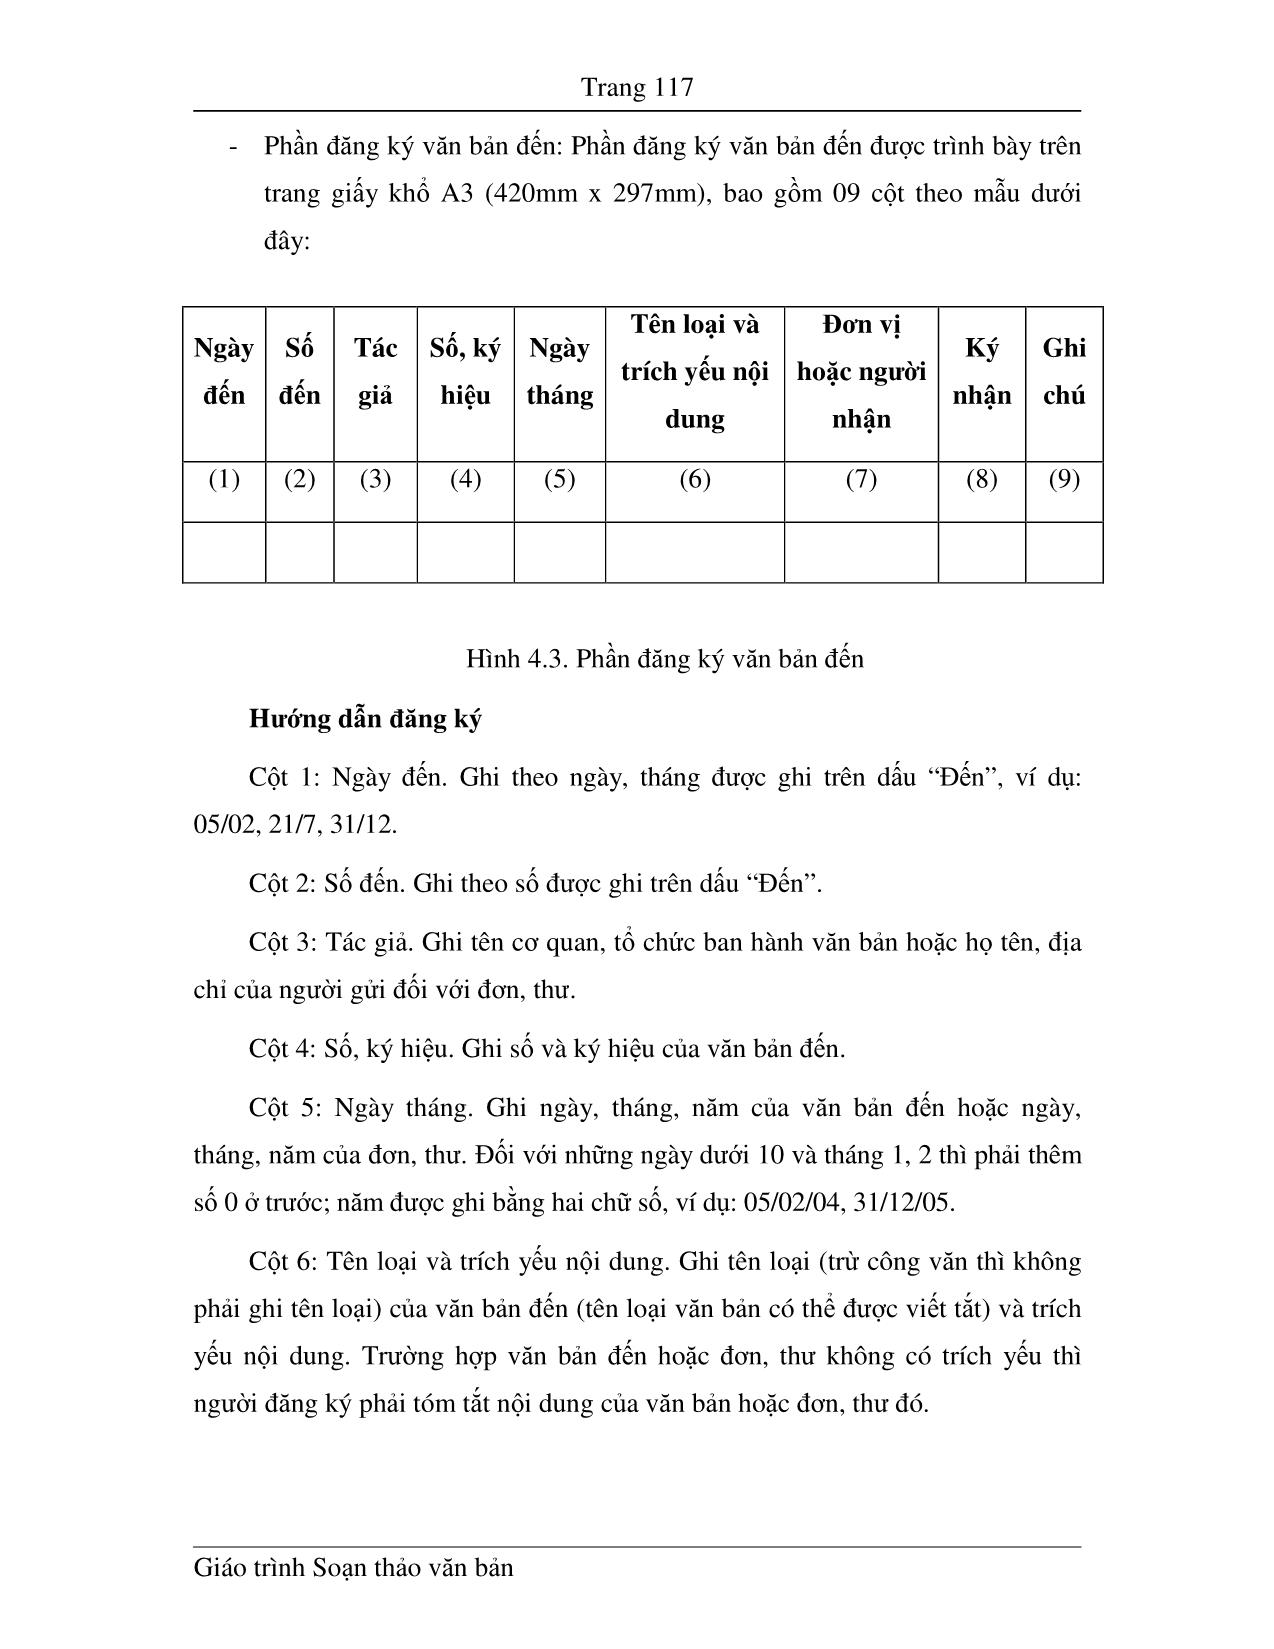 Giáo trình Soạn thảo văn bản (Phần 2) trang 10